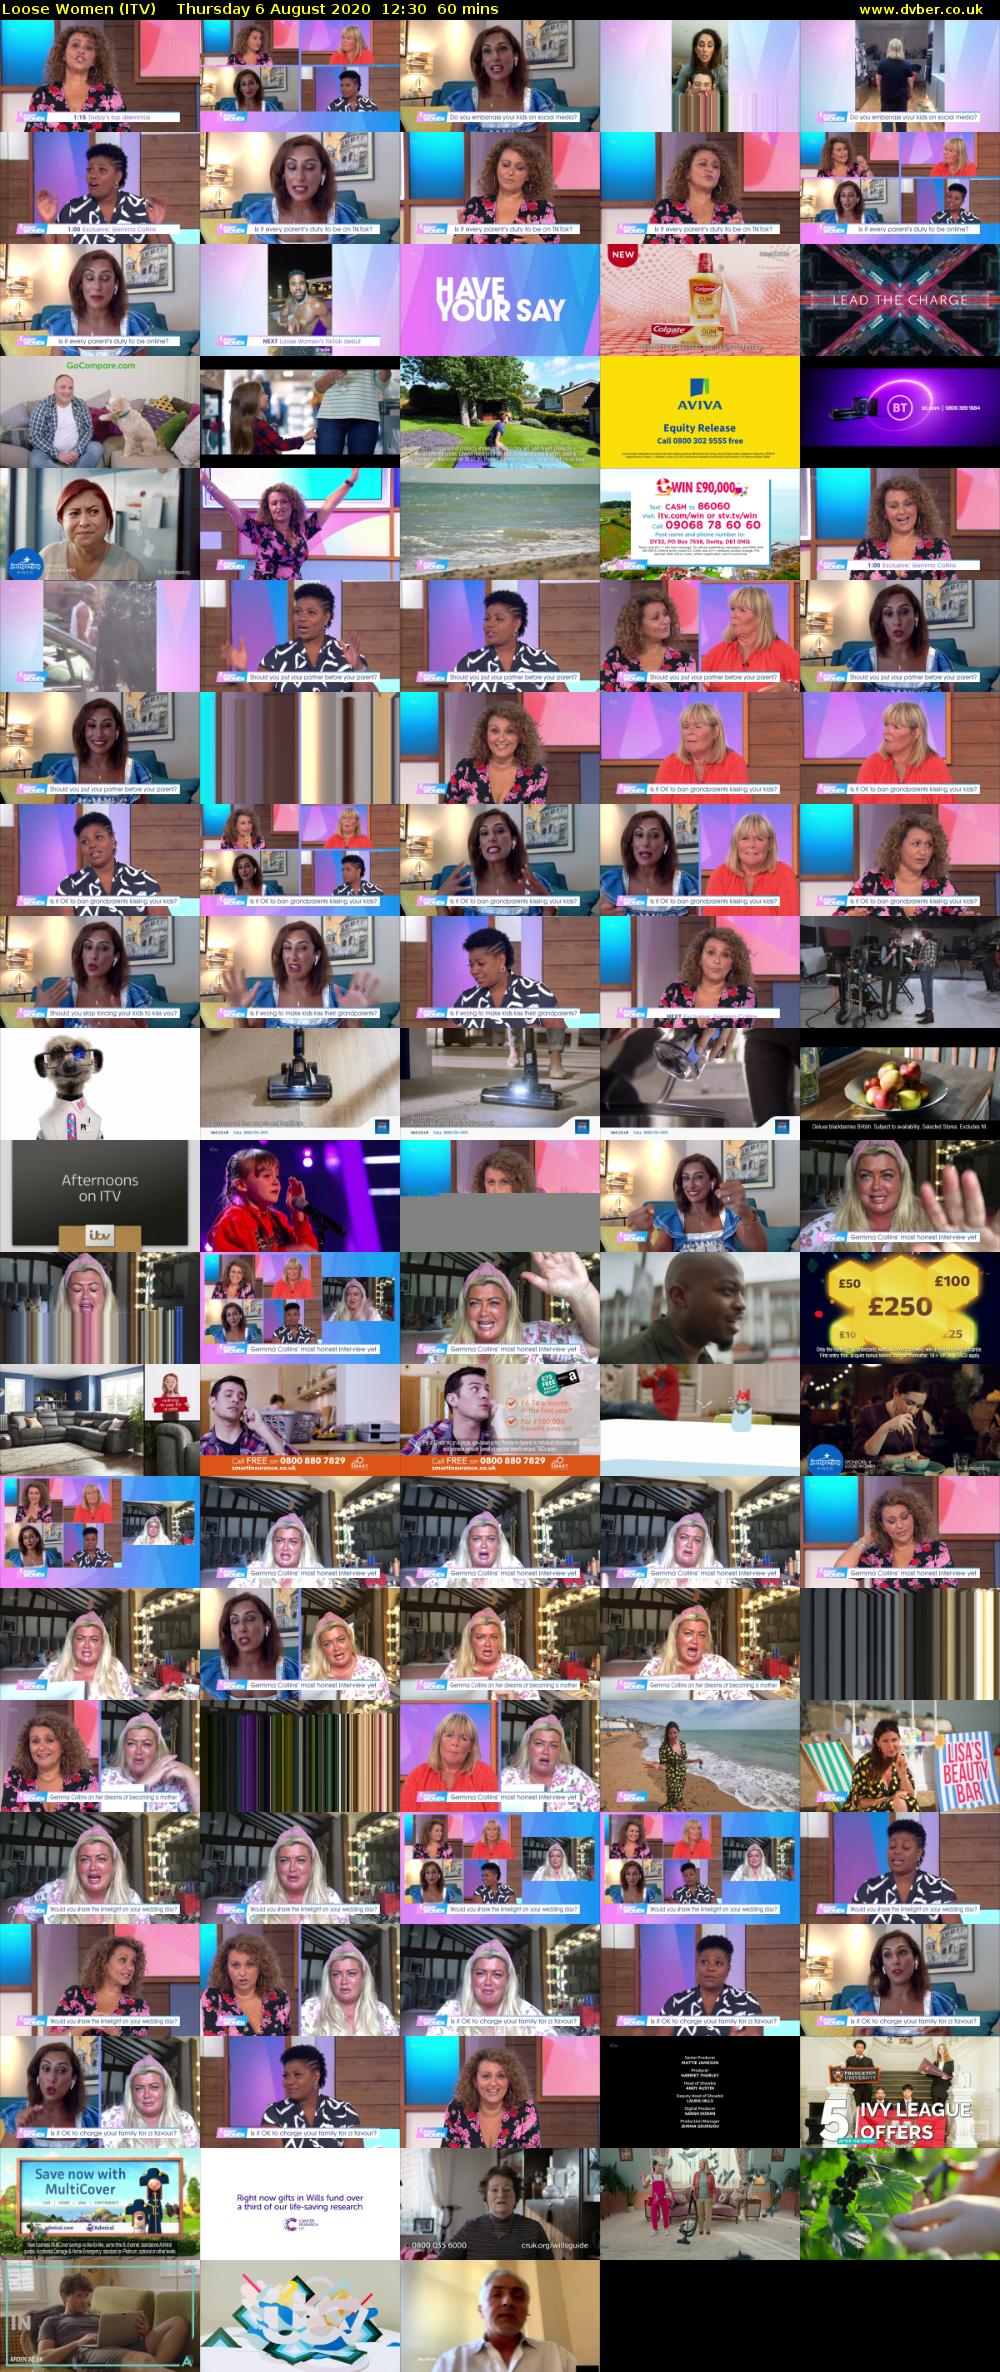 Loose Women (ITV) Thursday 6 August 2020 12:30 - 13:30